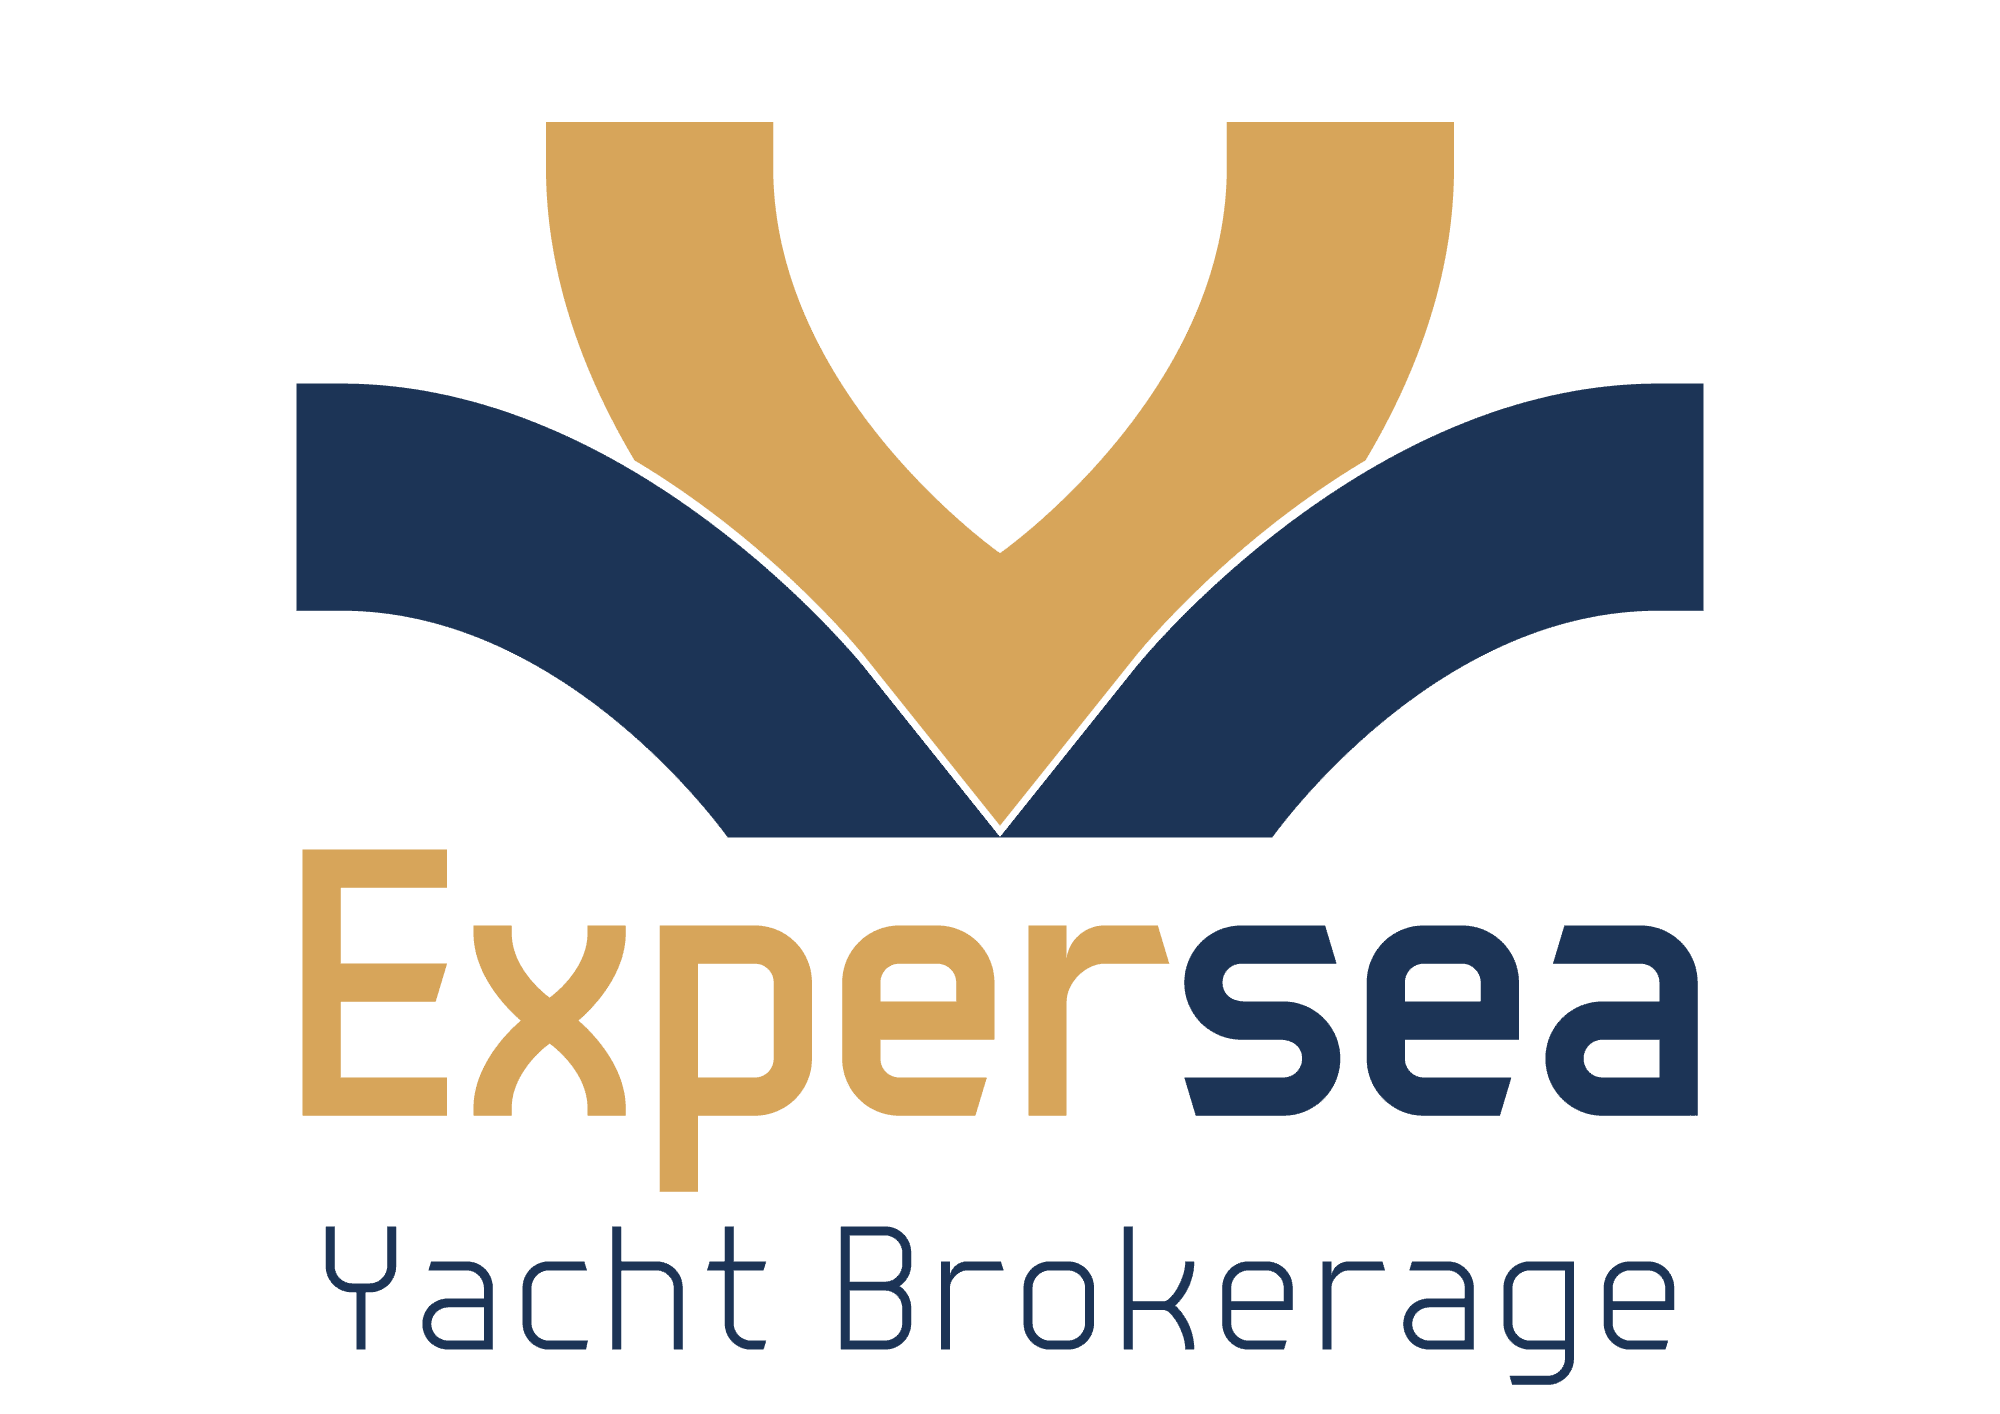 Expersea Yacht Brokerage logo